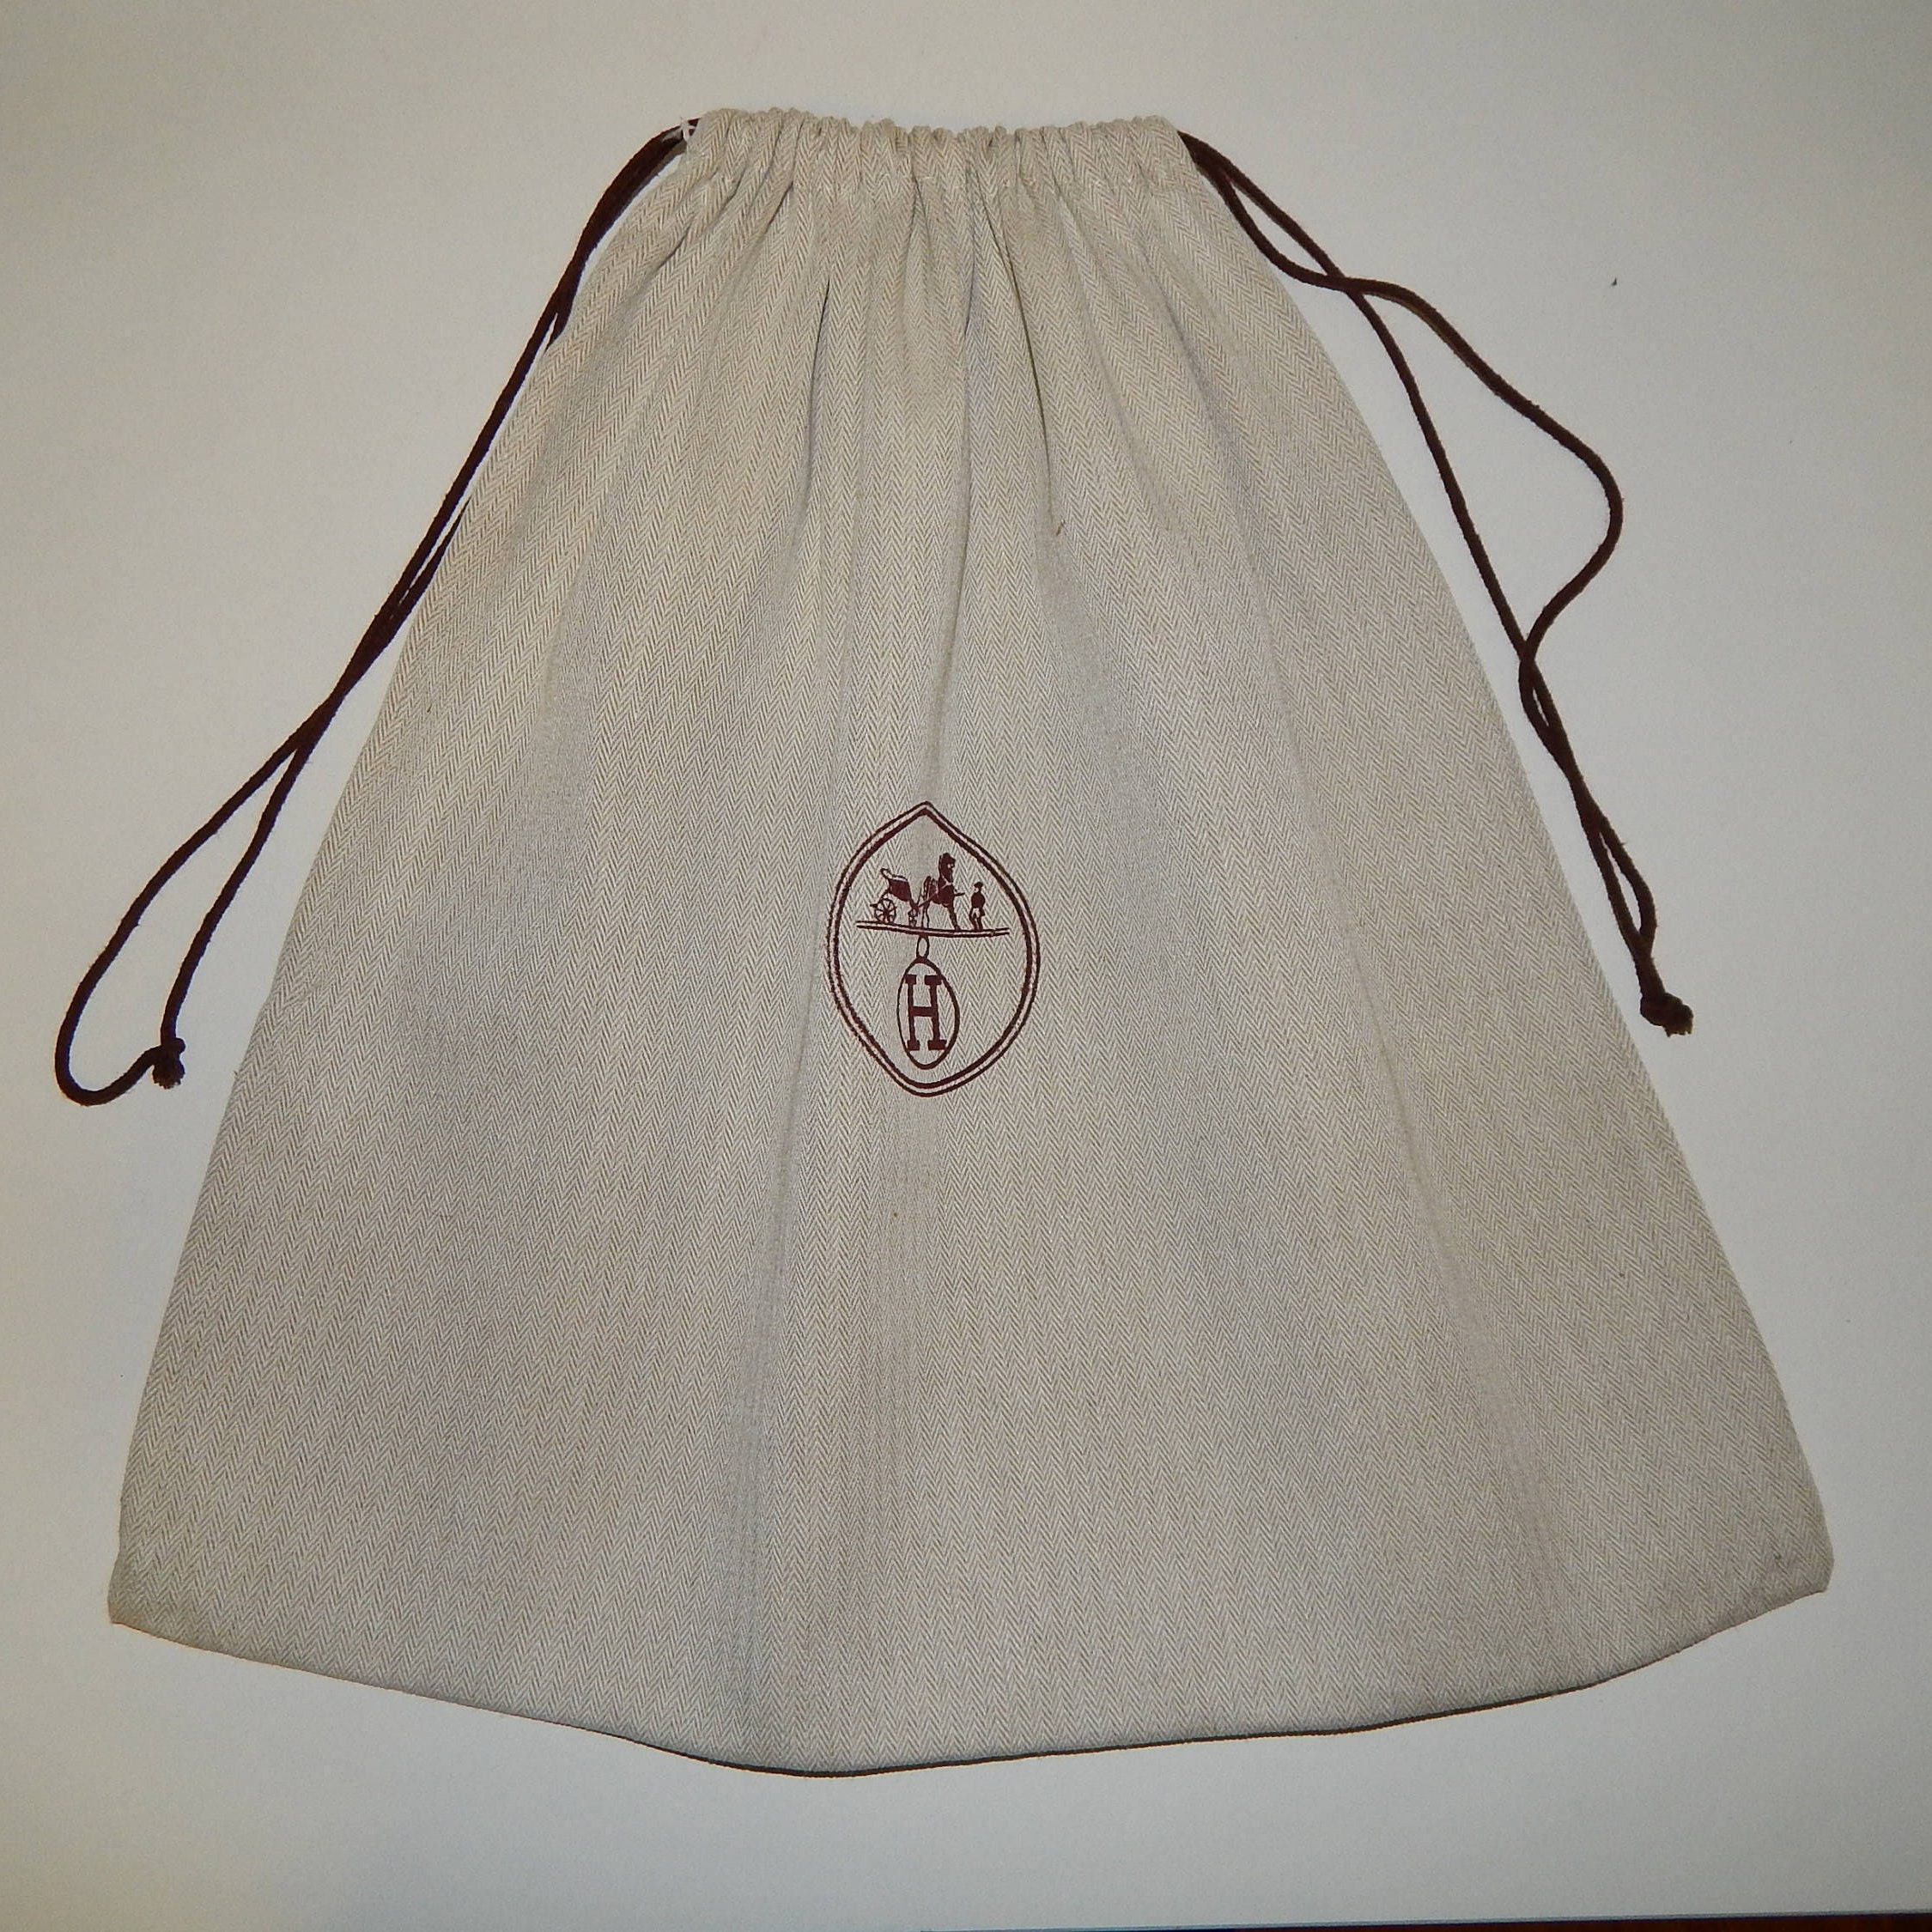 Pre-Owned HERMÈS Birkin Bags - Vintage Bags - FARFETCH